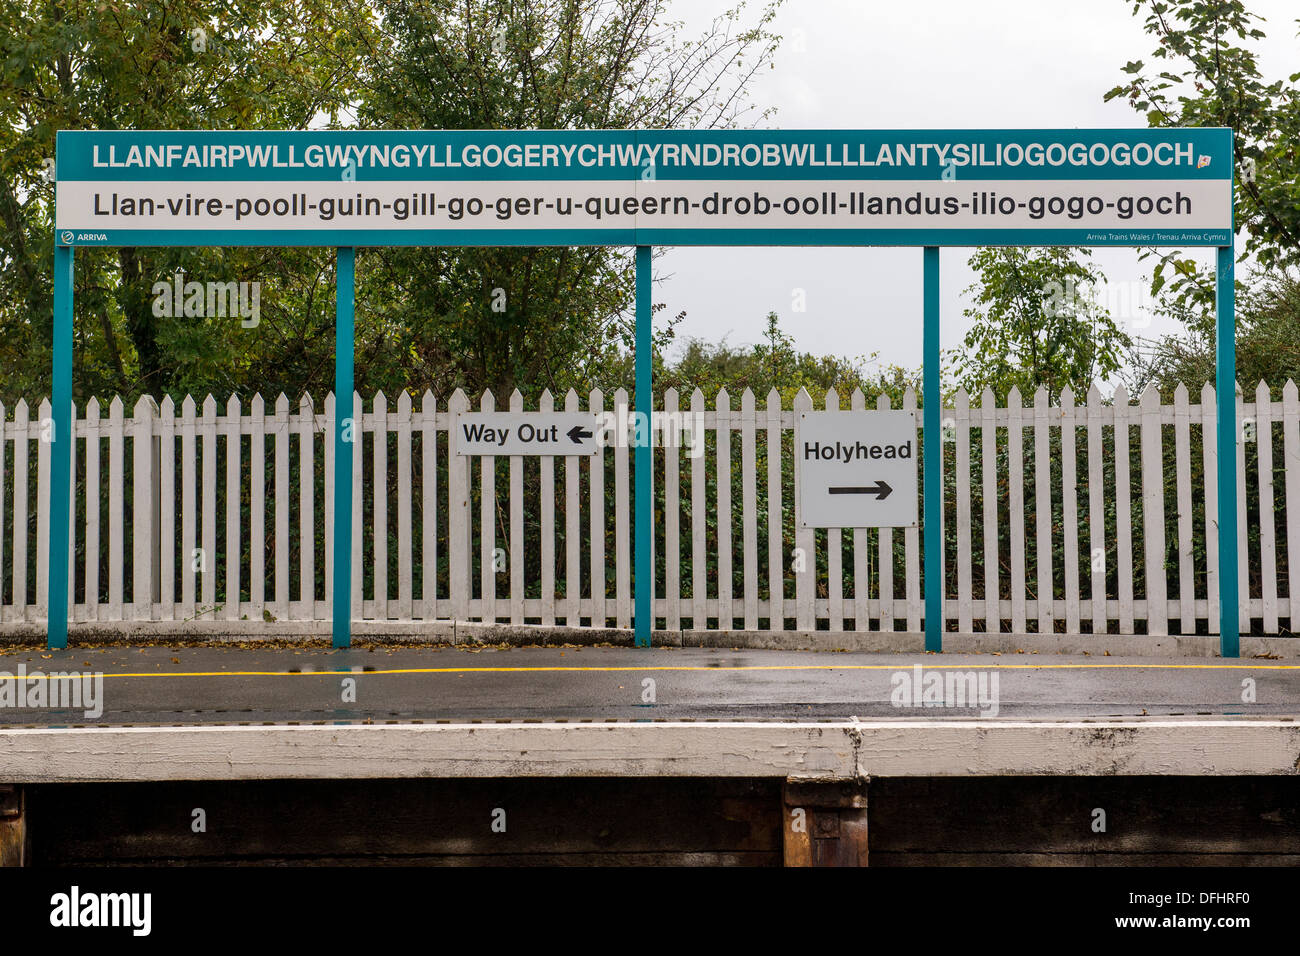 Llanfairpwllgwyngyllgogerychwyrndrobwllllantysiliogogogoch stazione ferroviaria, nel villaggio con la più lunga il nome del luogo in Europa. Foto Stock